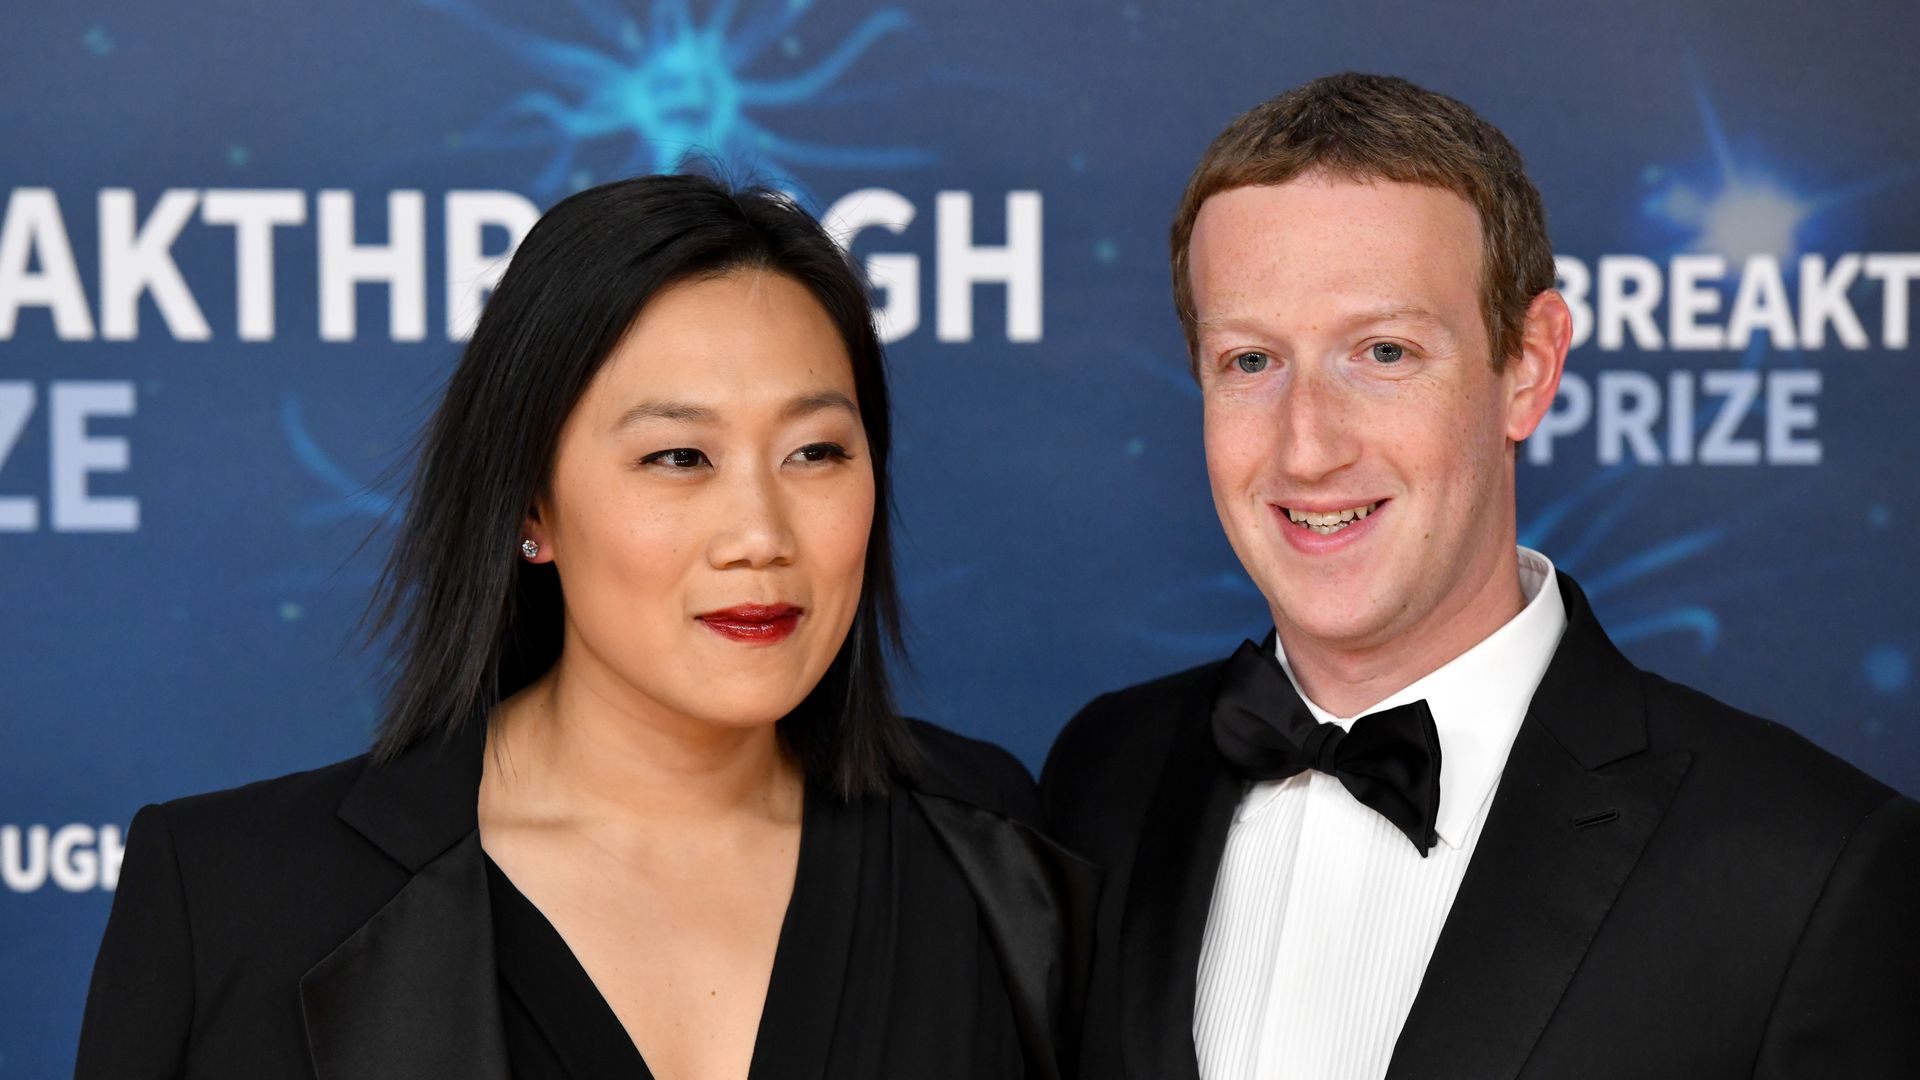 All about Mark Zuckerberg's $270M Hawai'i compound, wife Priscilla and ...